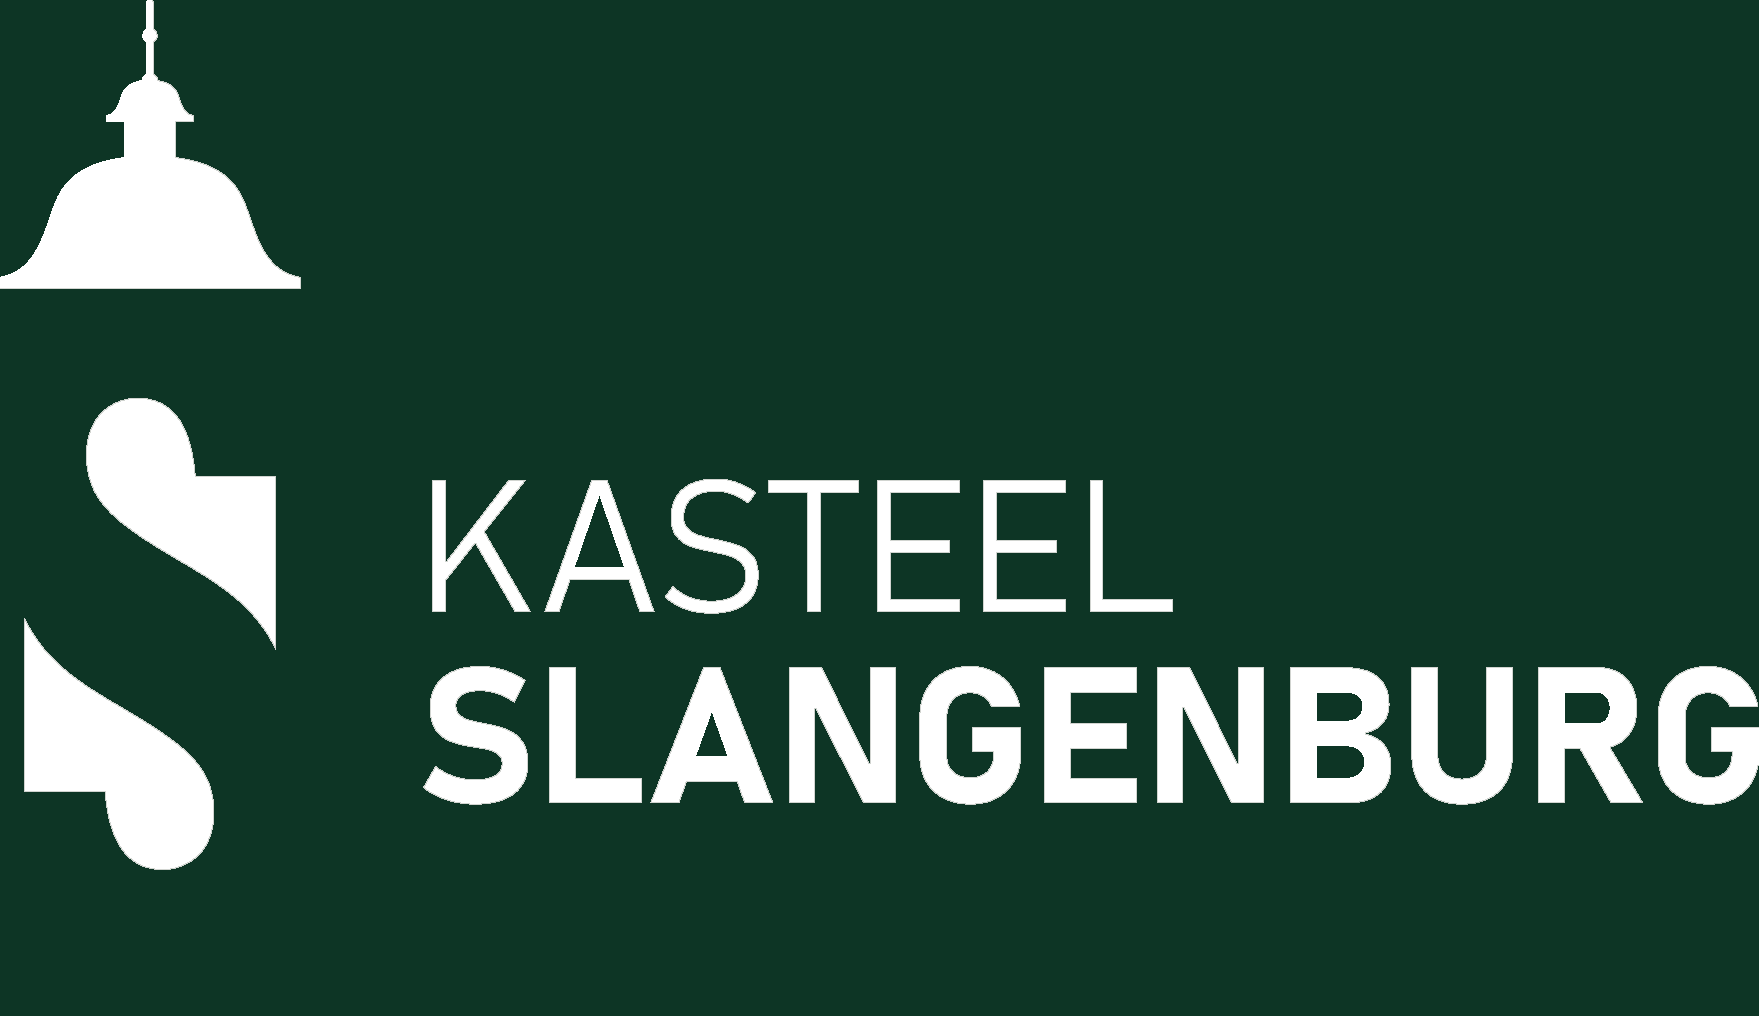 Kasteel Slangenburg